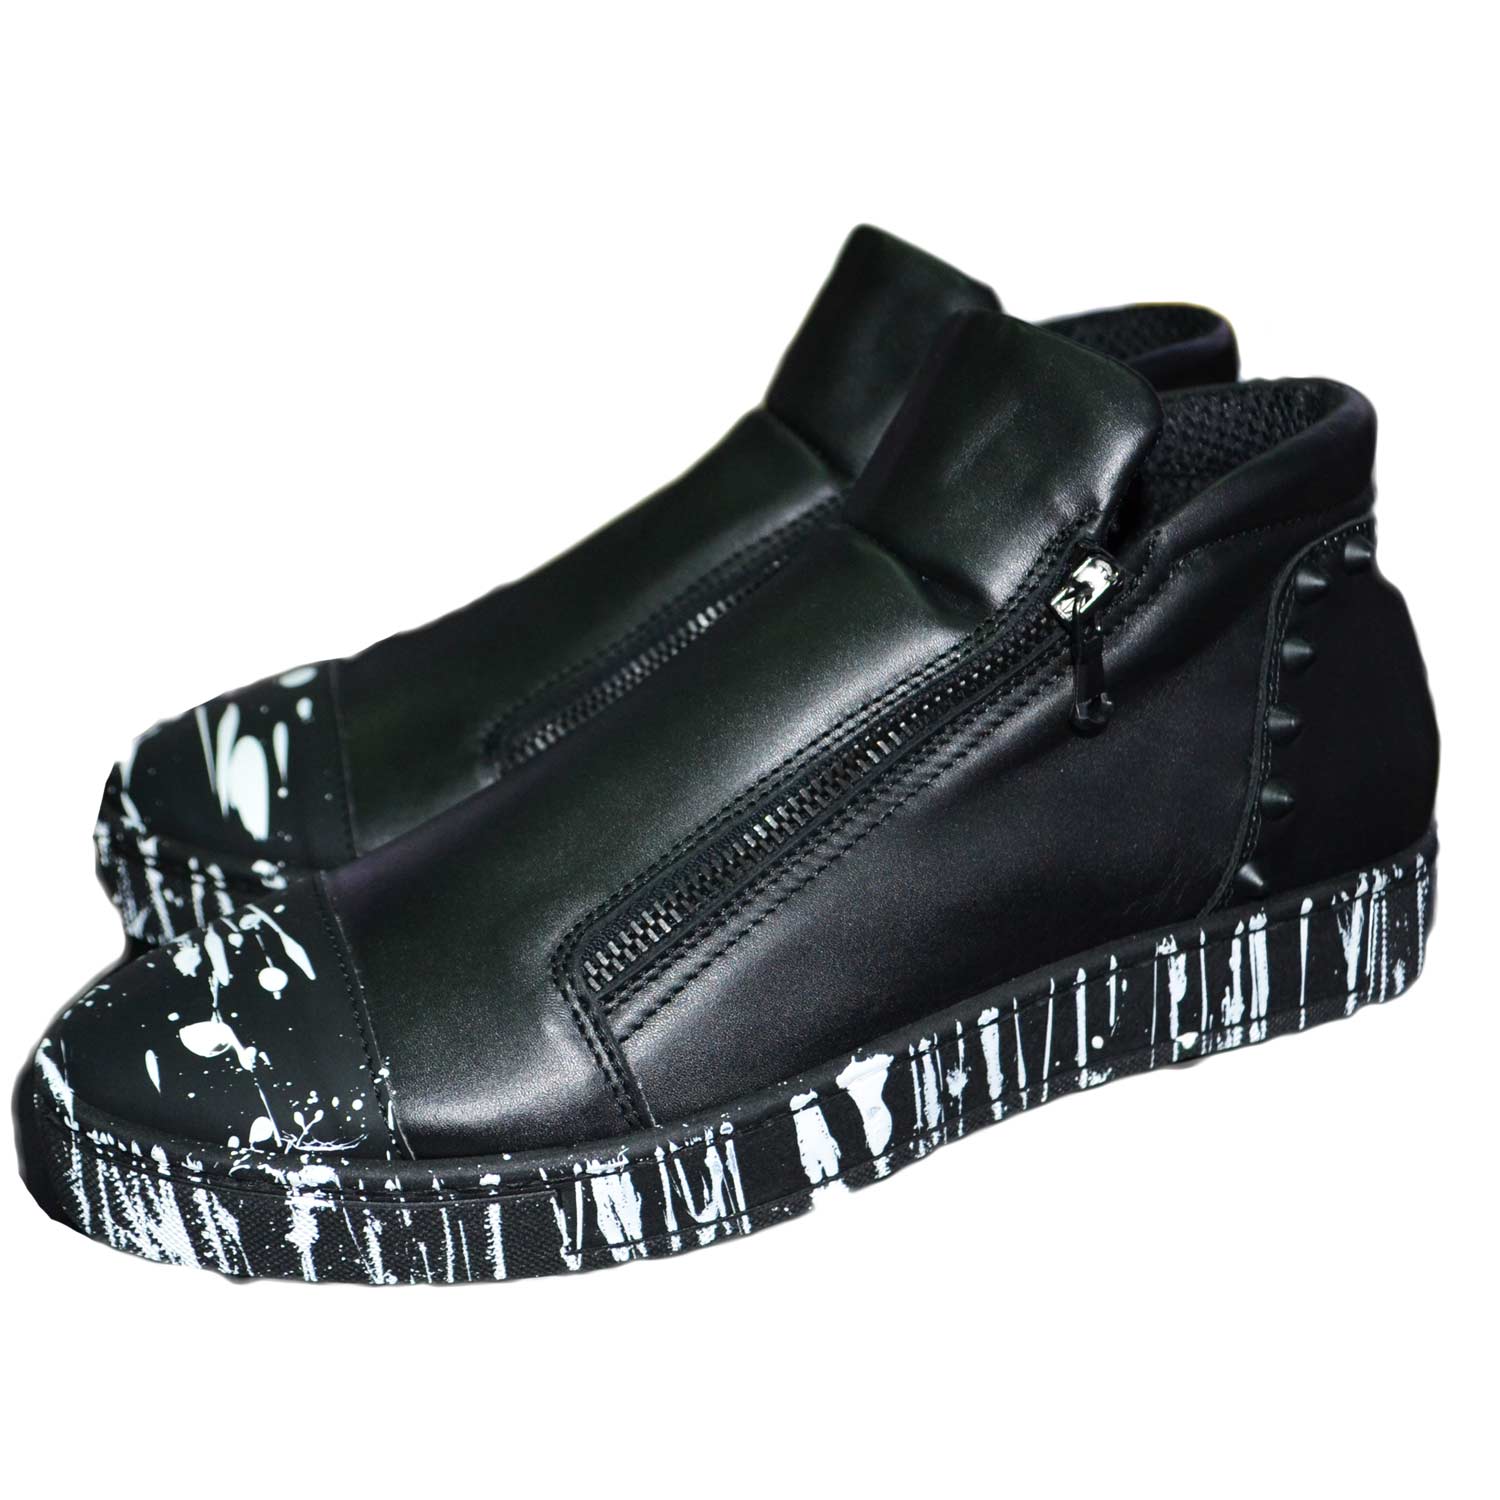 Sneakers bassa uomo scarpe calzature modello con zip dettaglio nero vitello schizzi vera pelle borchie